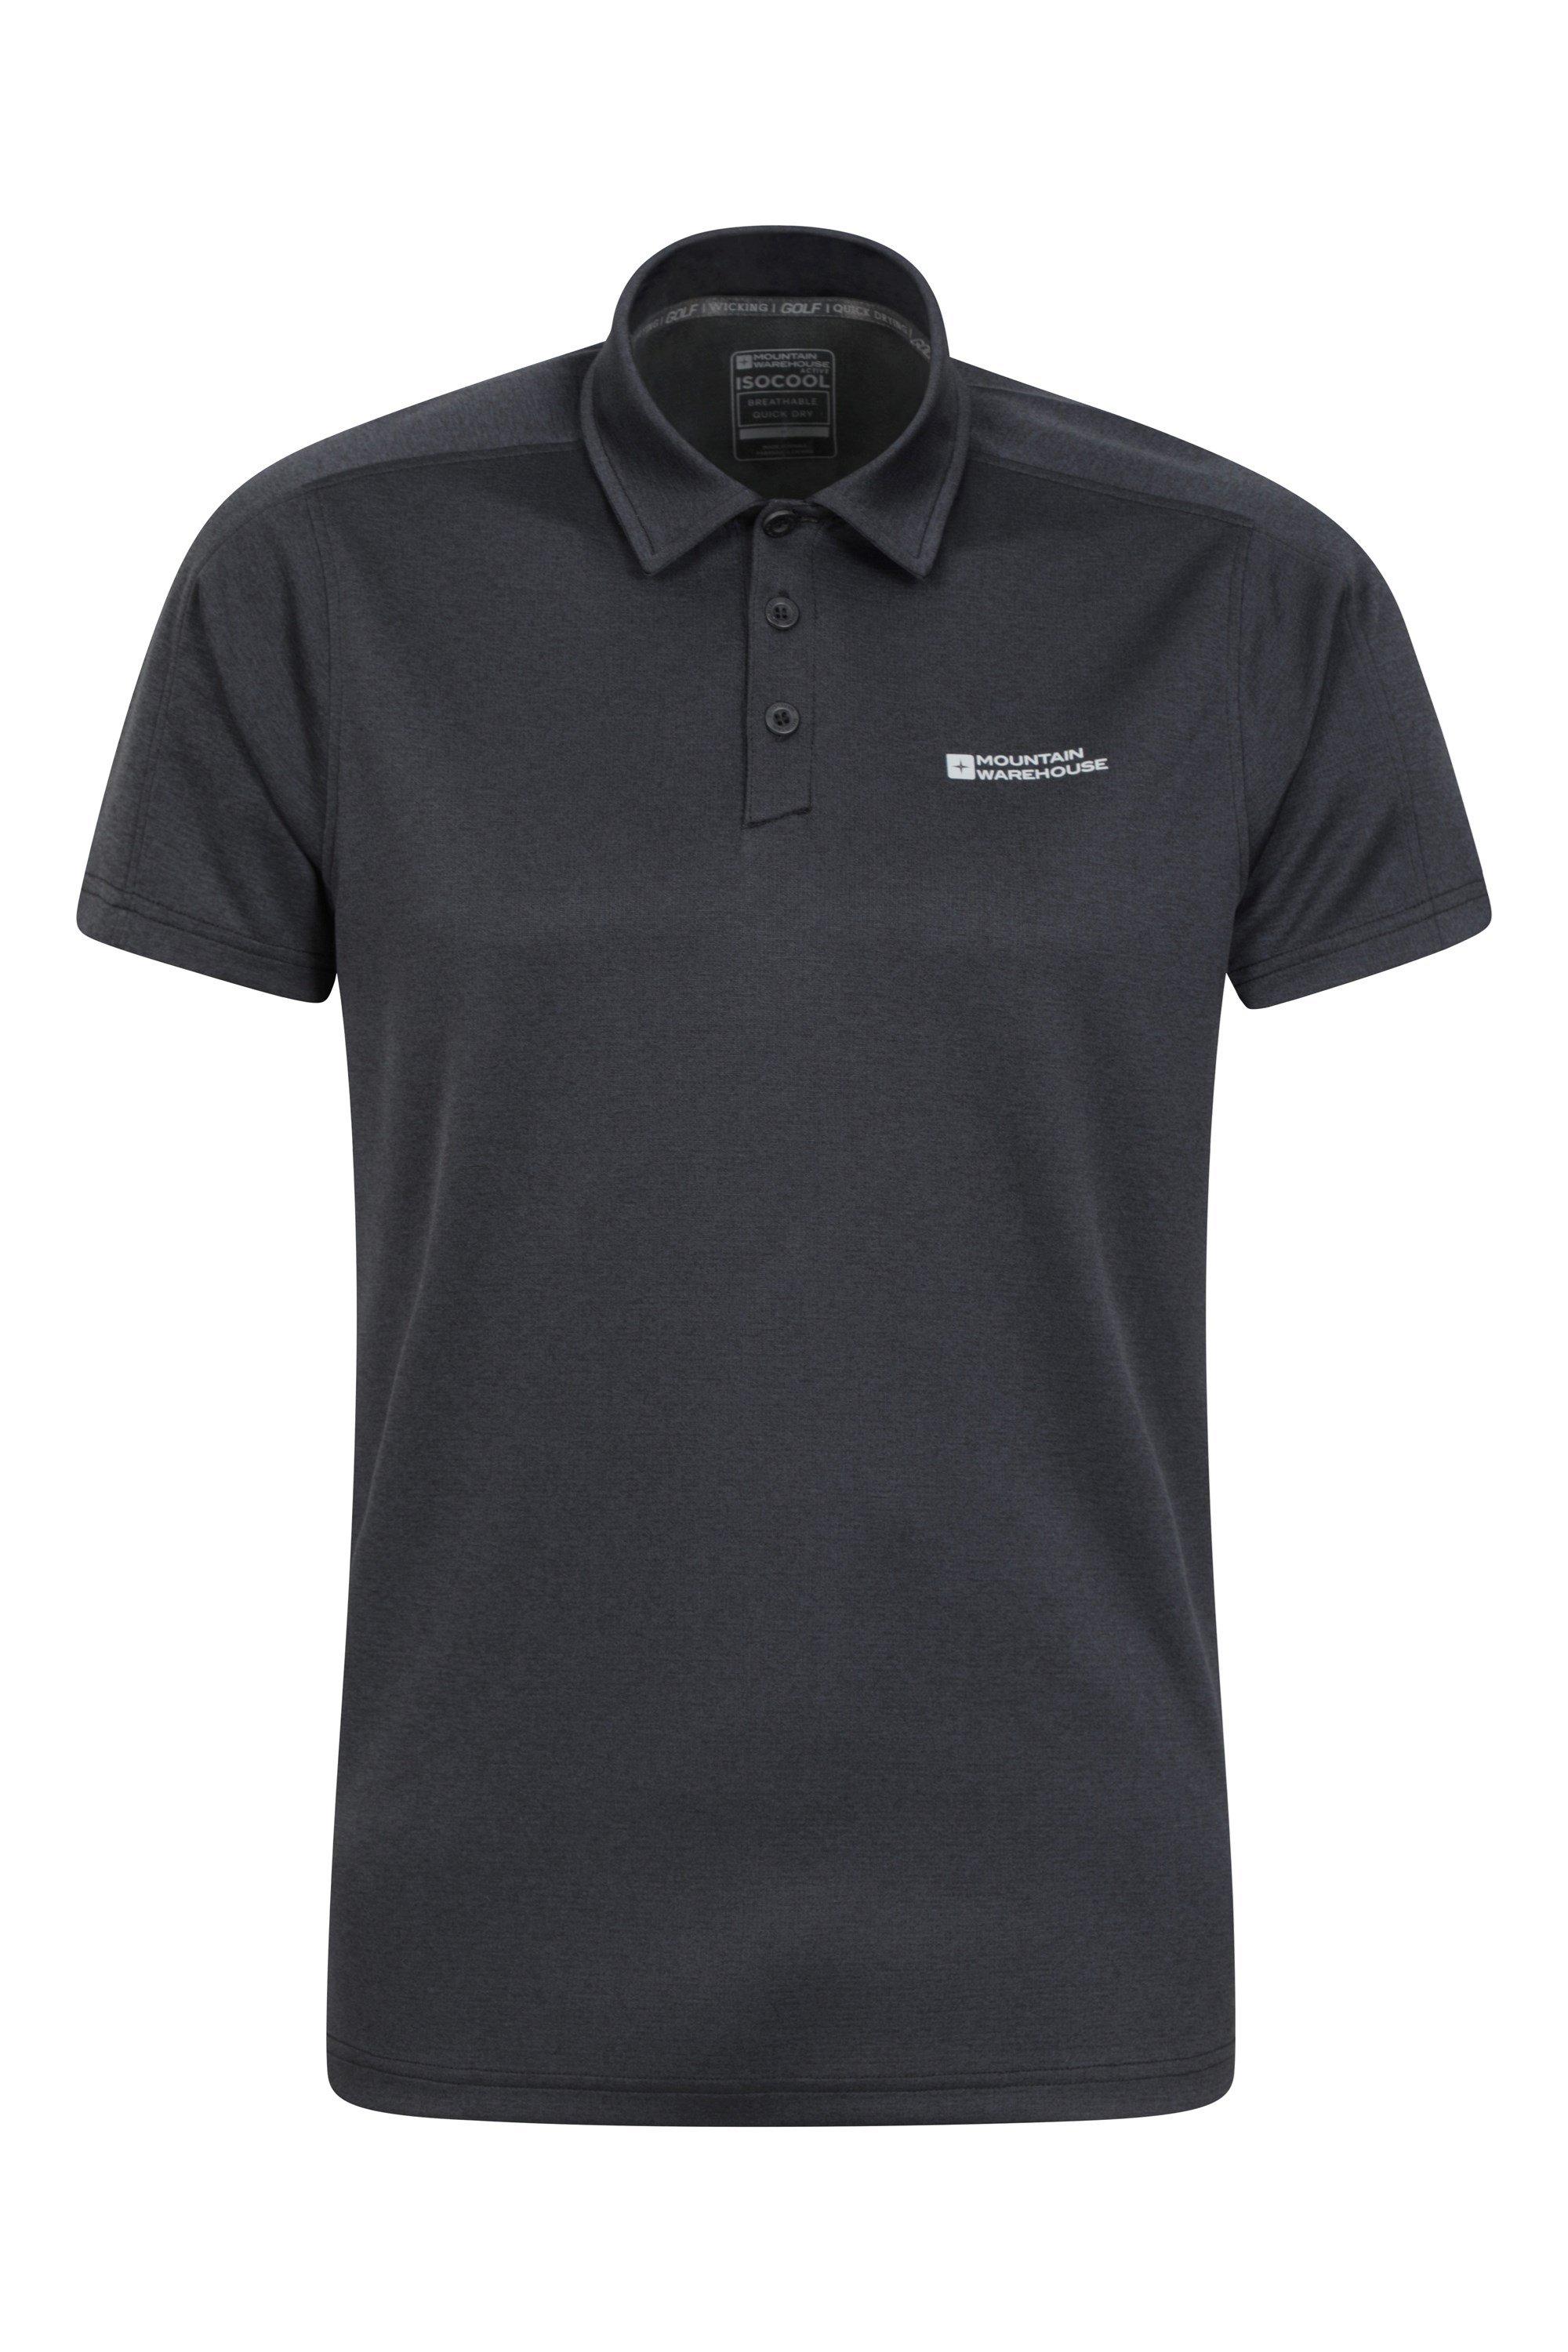 Клубная меланжевая рубашка-поло IsoCool, повседневный топ с короткими рукавами Mountain Warehouse, черный фото